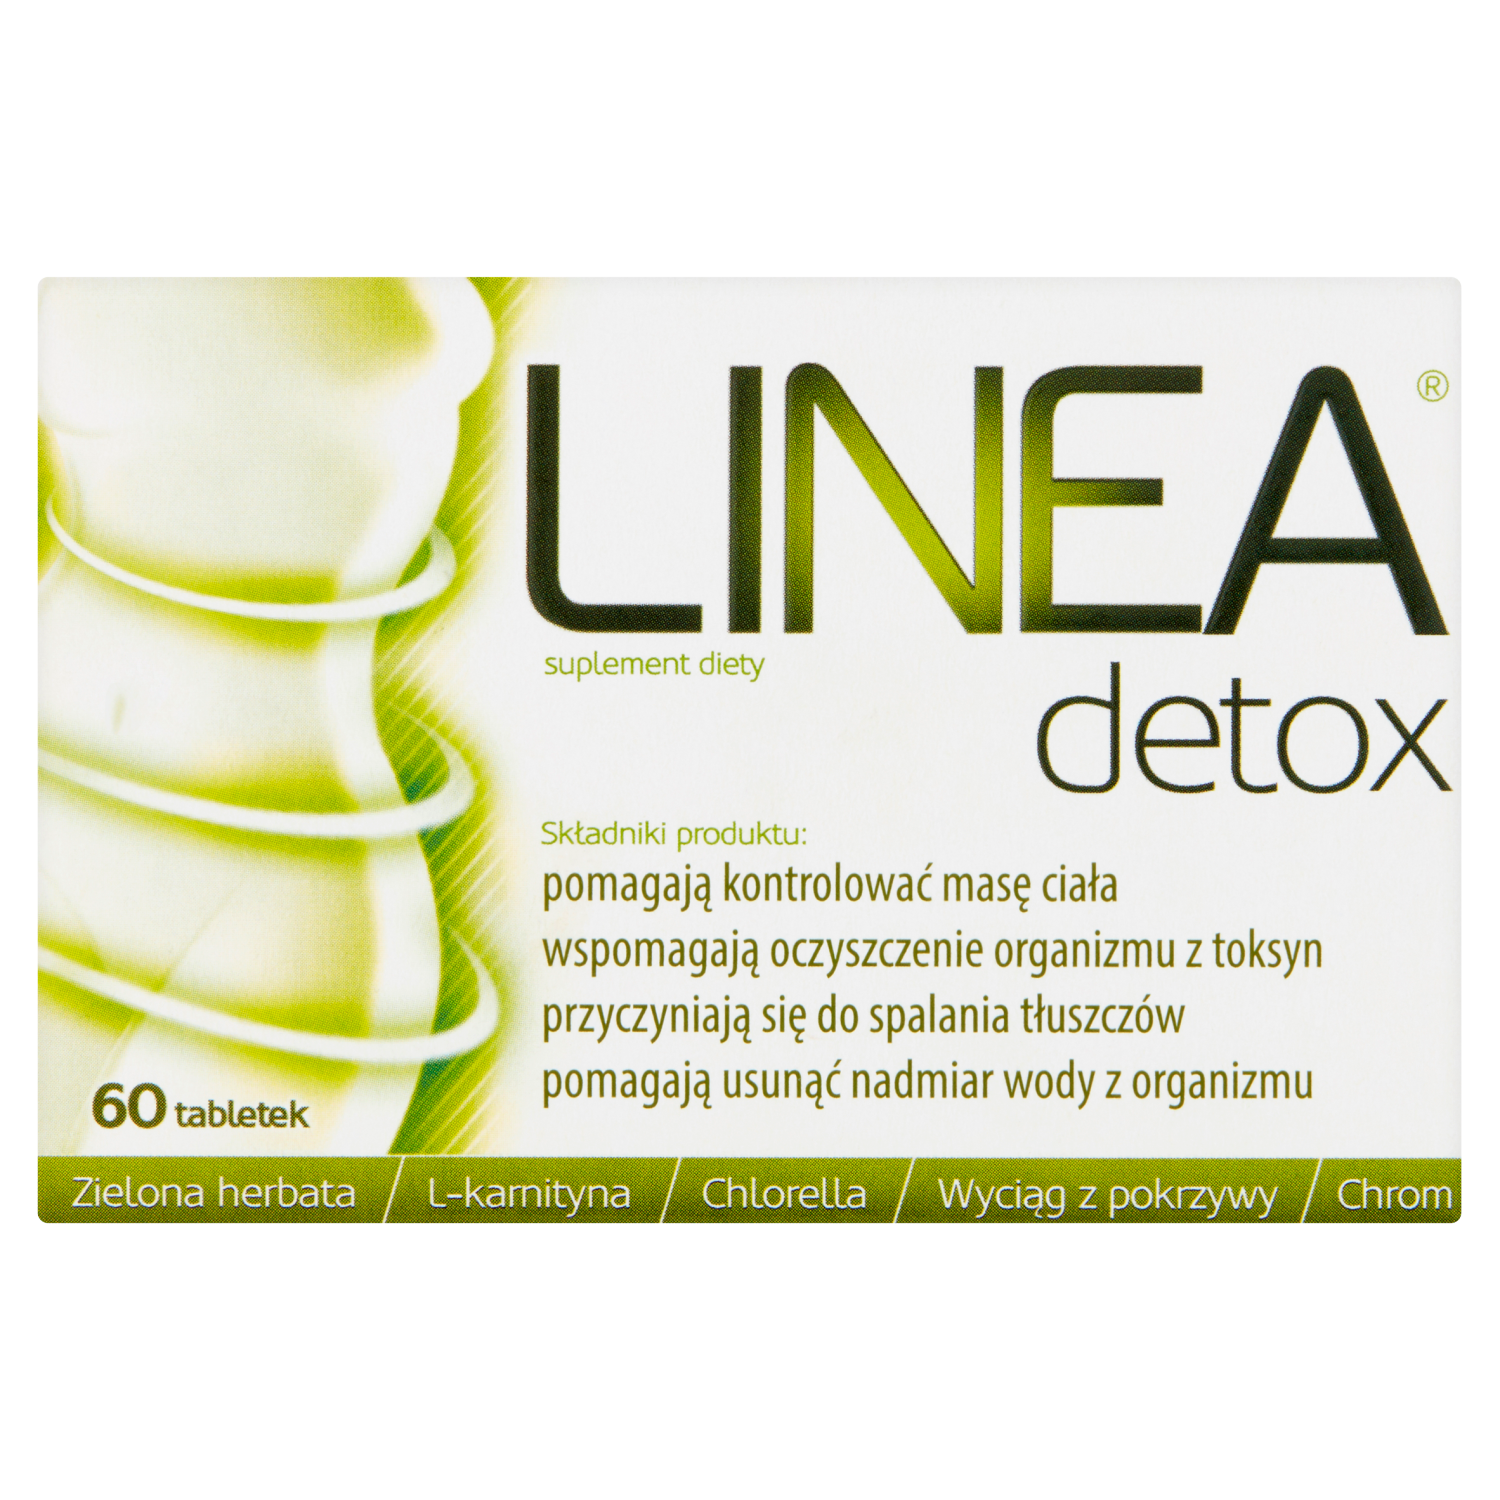 liporedium биологически активная добавка 60 таблеток 1 упаковка Linea Detox биологически активная добавка, 60 таблеток/1 упаковка